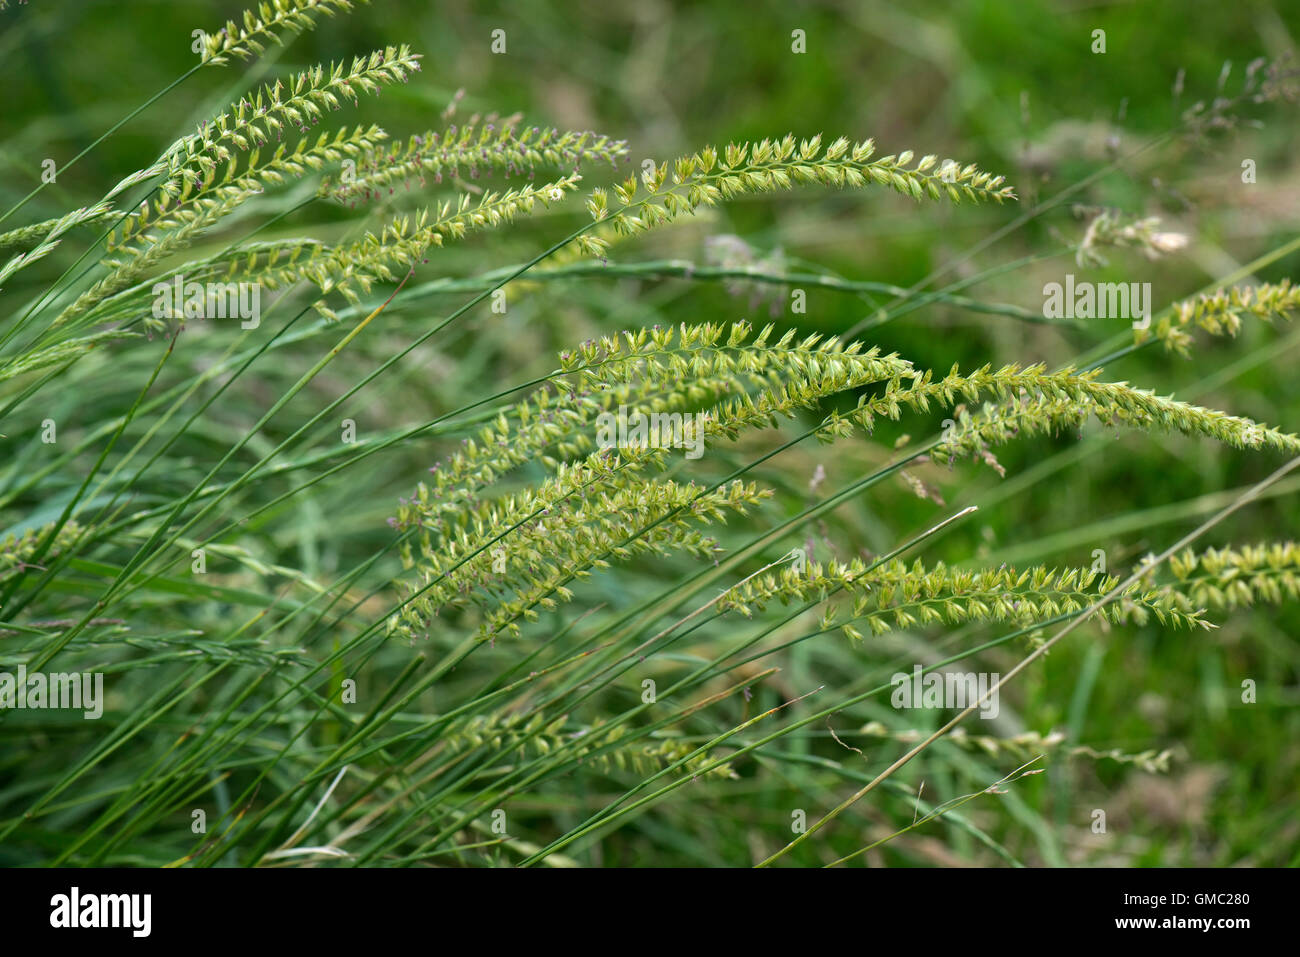 Crested dog-tail hierba, Cynosurus cristatus, florece con otras hierbas, Junio Foto de stock